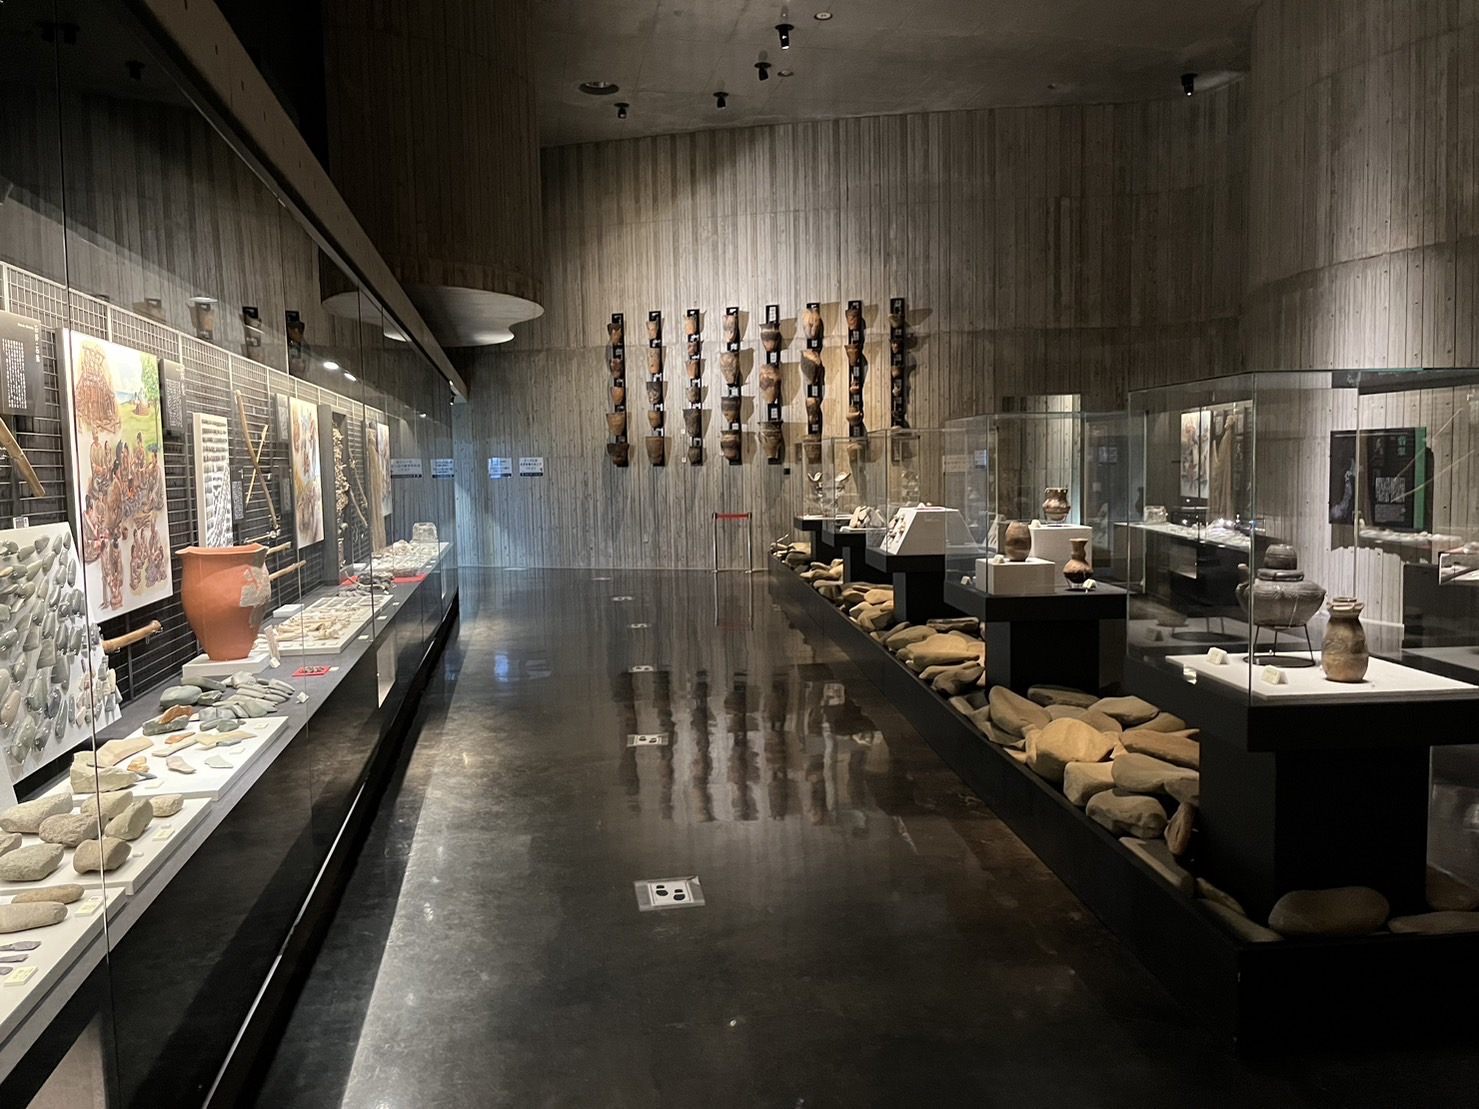 函館市縄文文化交流センターには縄文遺跡からの発掘品が多数